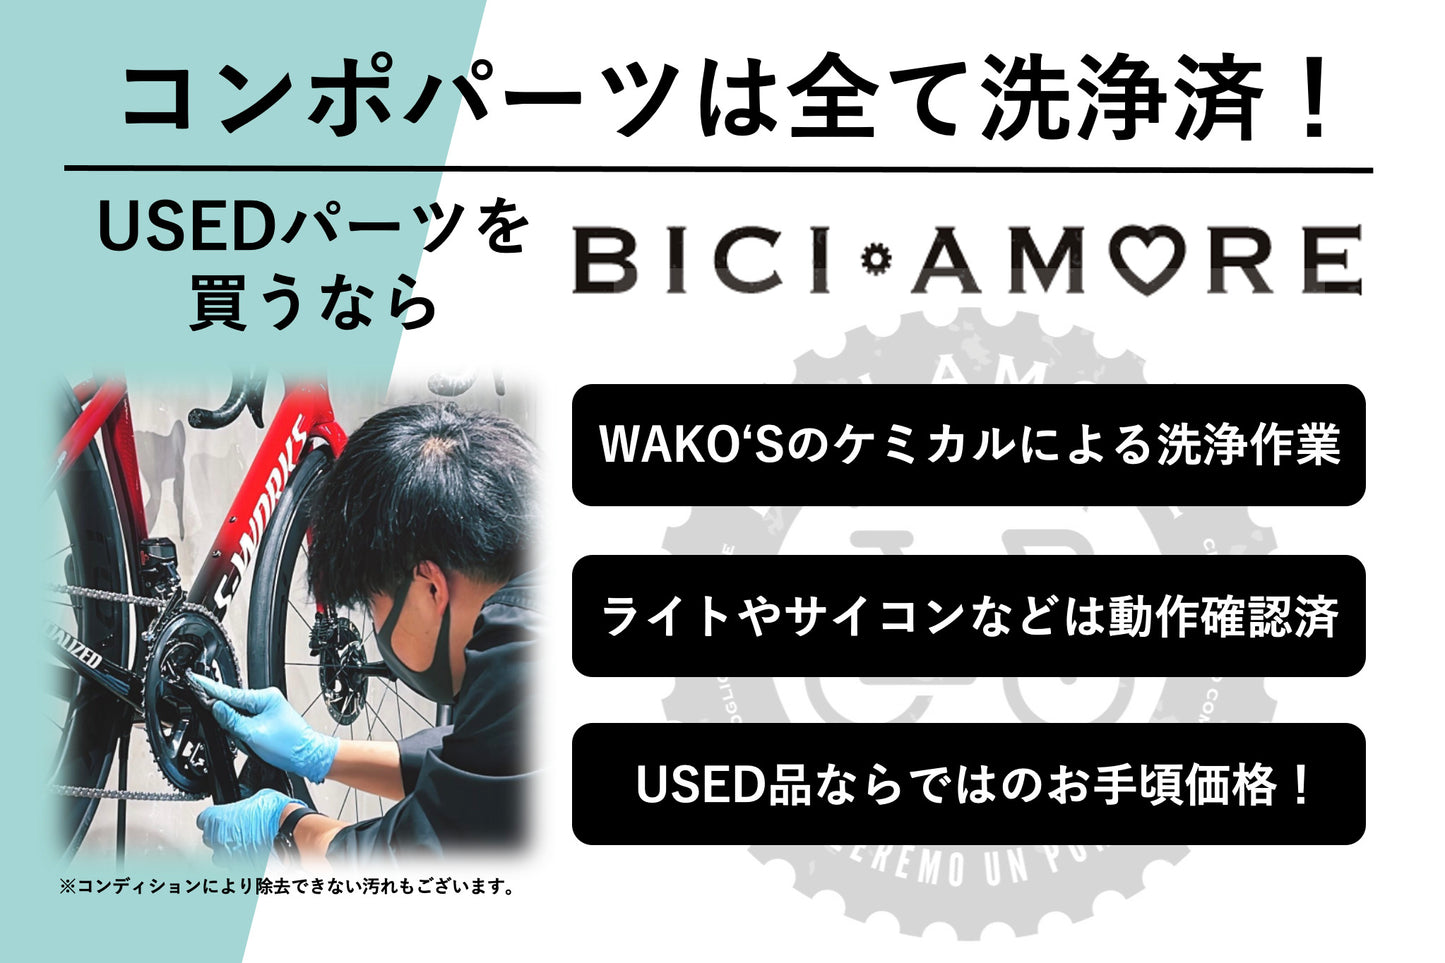 GB834 シマノ SHIMANO 105 PD-5800 ビンディングペダル SPD-SL